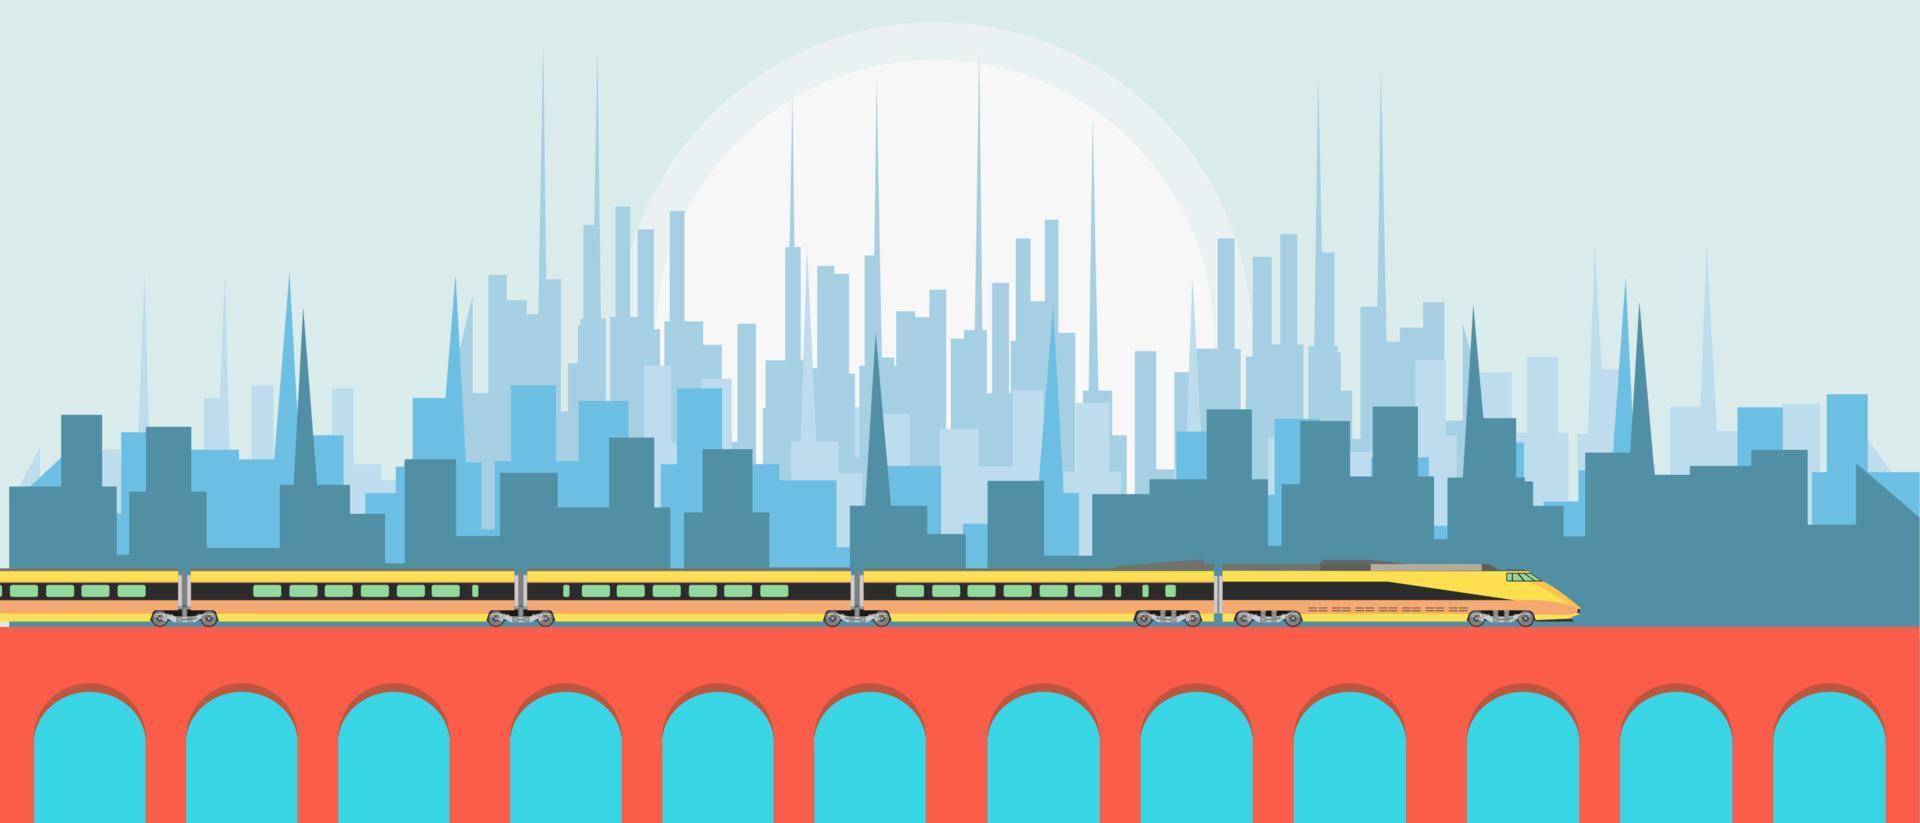 paysage urbain avec concept d'illustration vectorielle de train vecteur